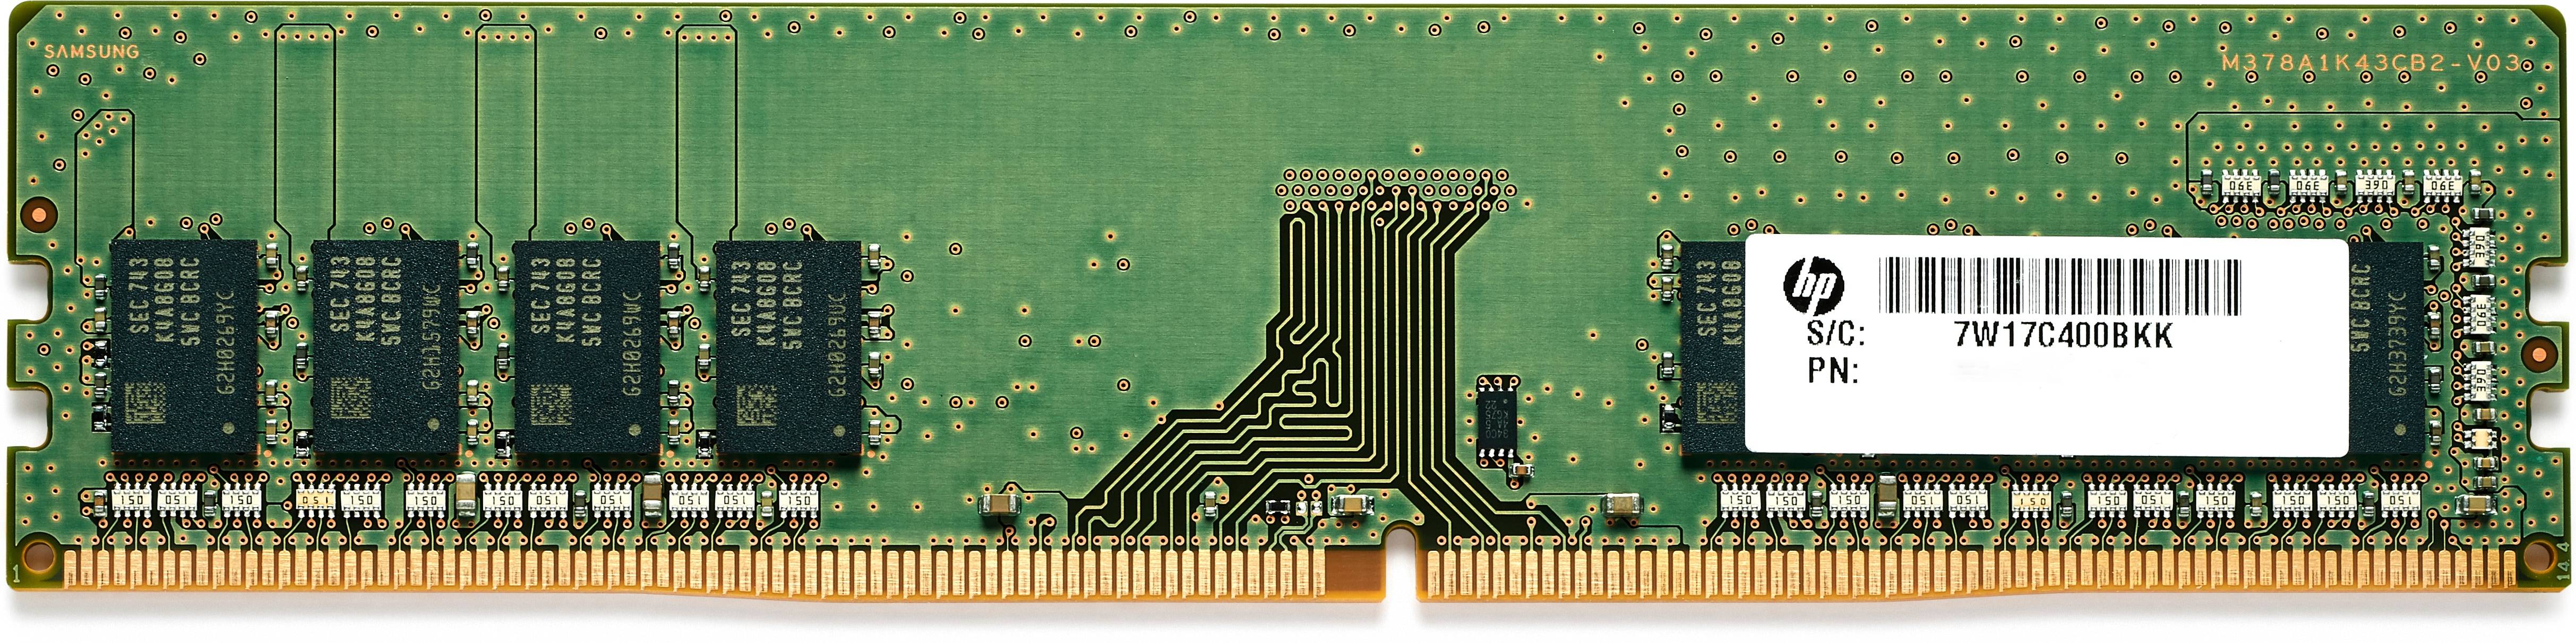 Rca Informatique - Image du produit : 8GB (1X8GB) DDR4 2933 NECC UDIM .